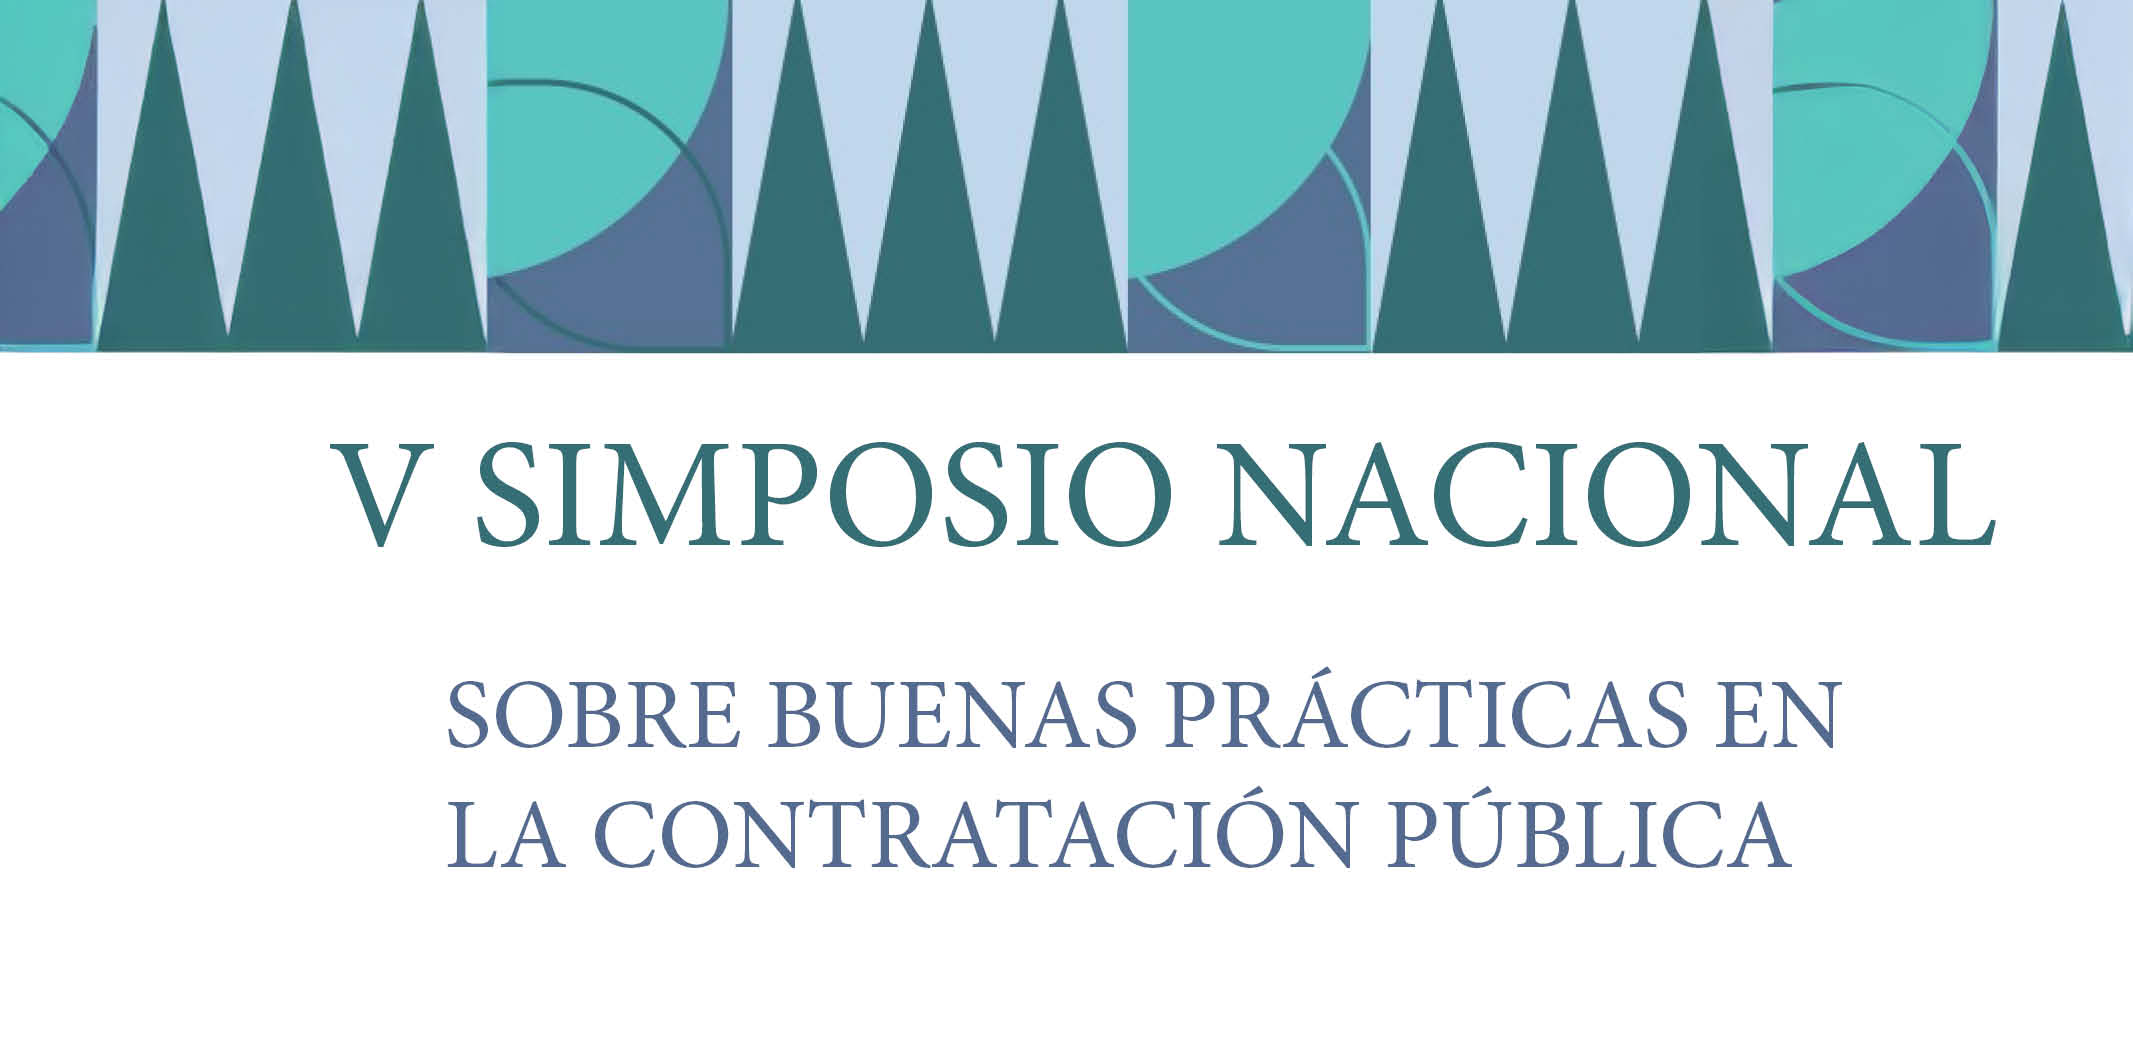 Valencia Acoge el V Simposio Nacional Sobre Buenas Prácticas en la Contratación Pública